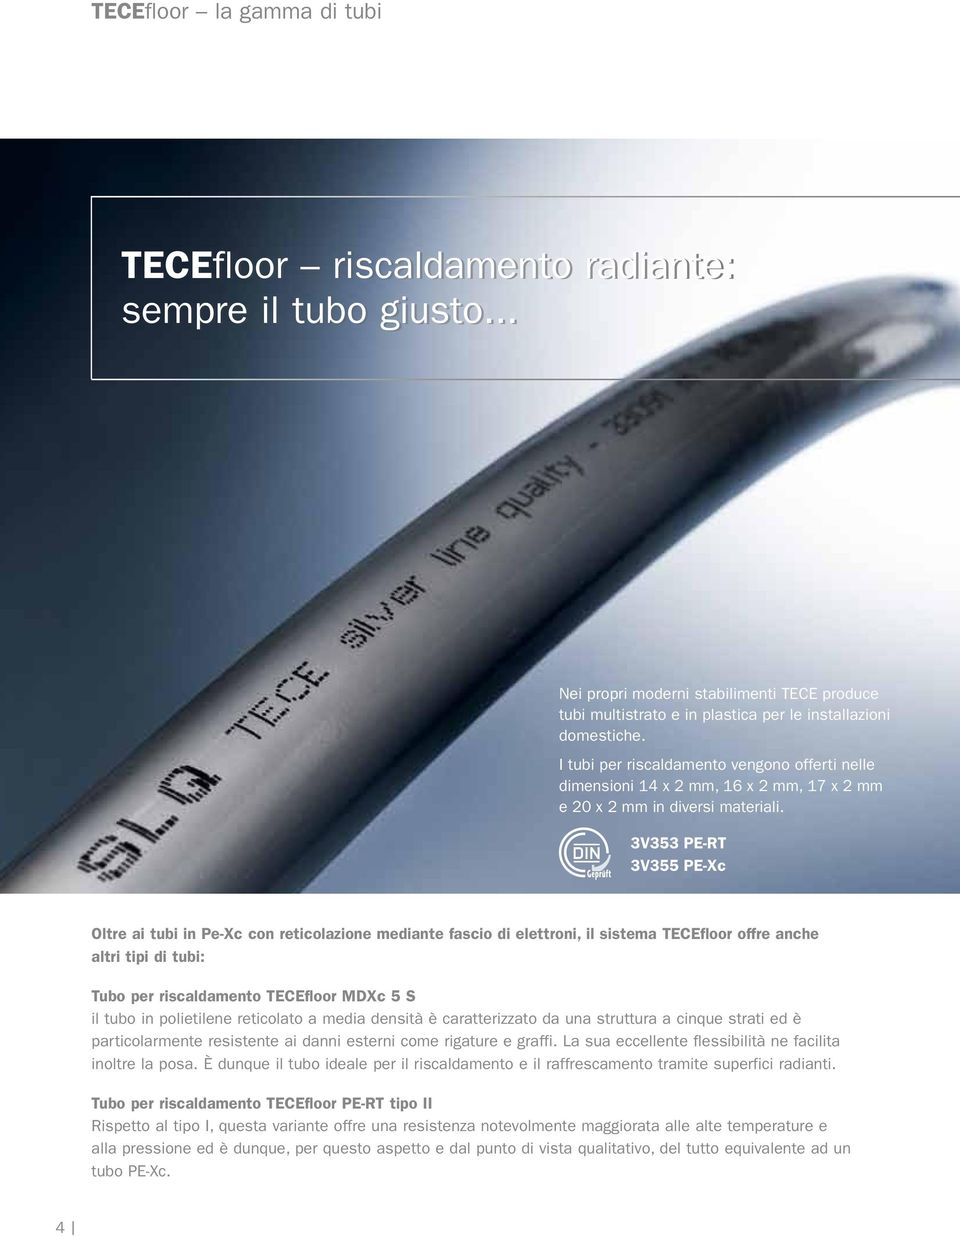 3V353 PE-RT 3V355 PE-Xc Oltre ai tubi in Pe-Xc con reticolazione mediante fascio di elettroni, il sistema TECEfloor offre anche altri tipi di tubi: Tubo per riscaldamento TECEfloor MDXc 5 S il tubo